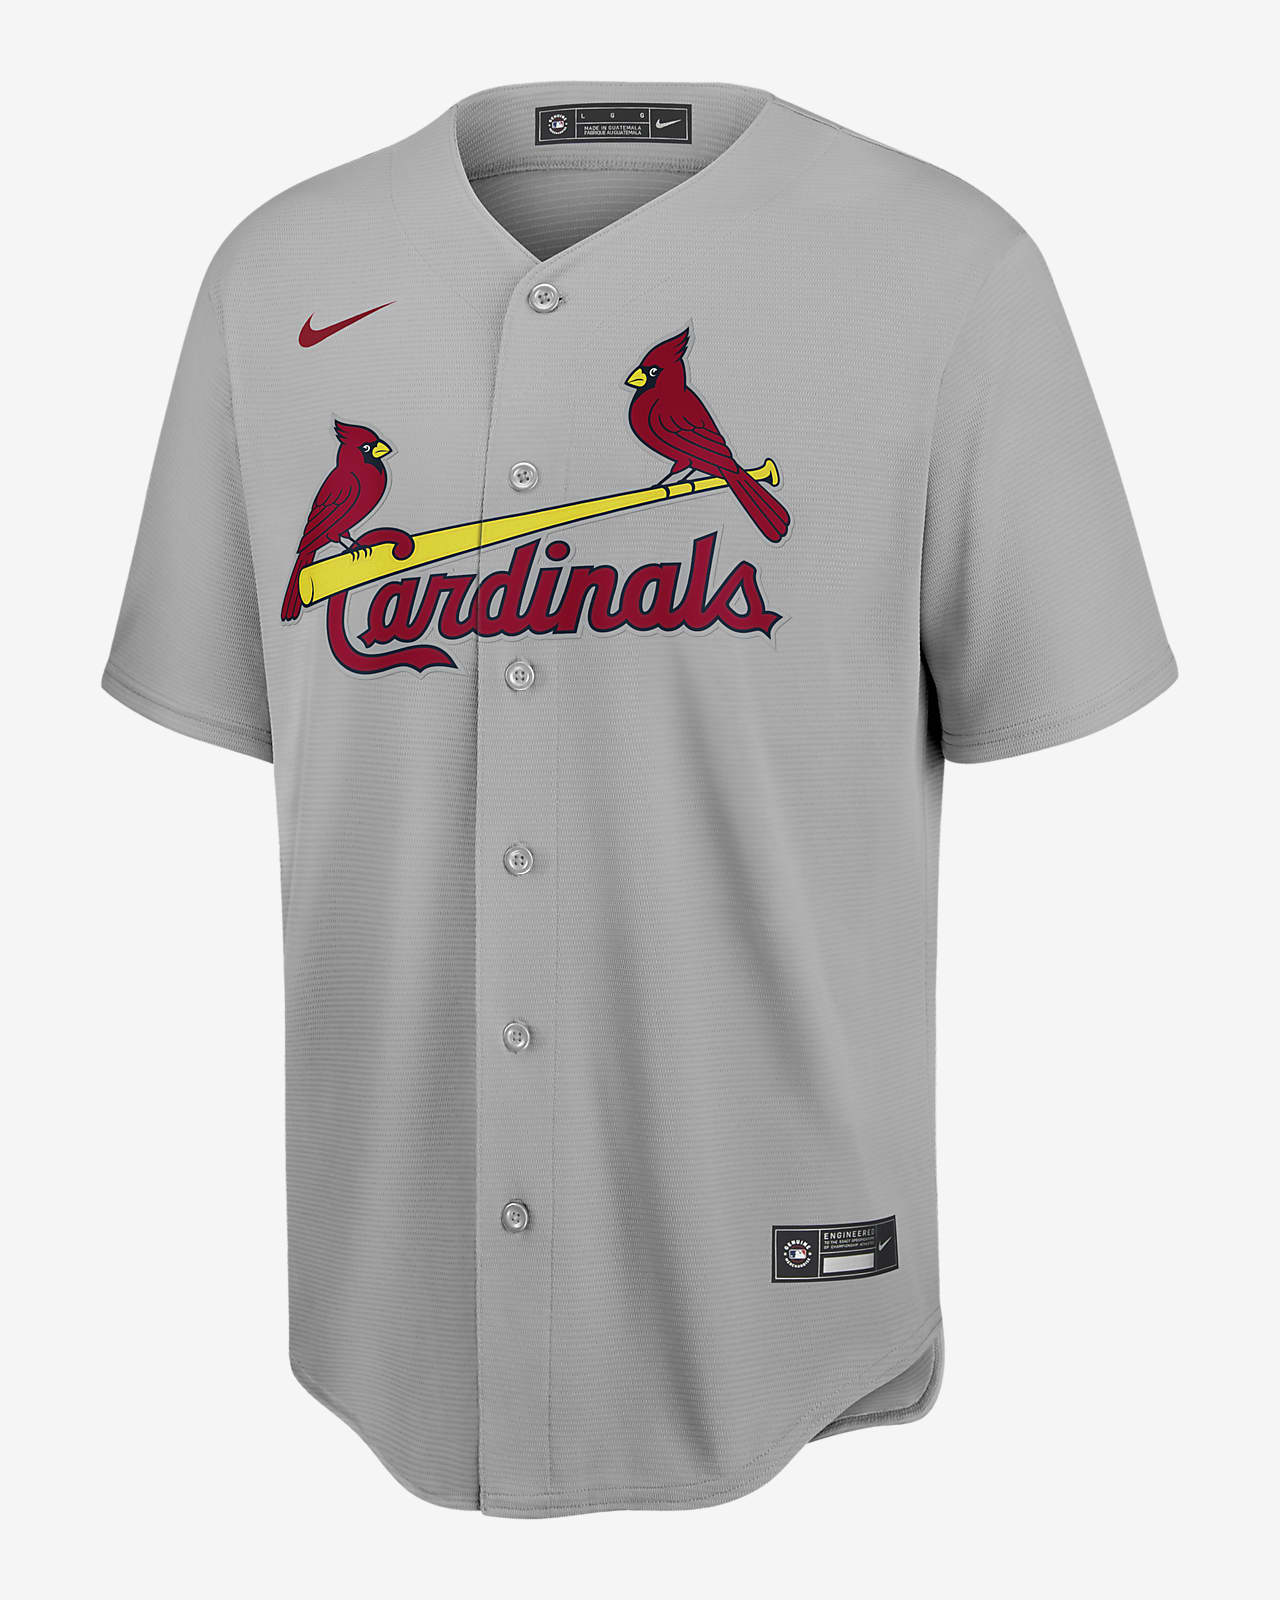 cardinals mlb jerseys